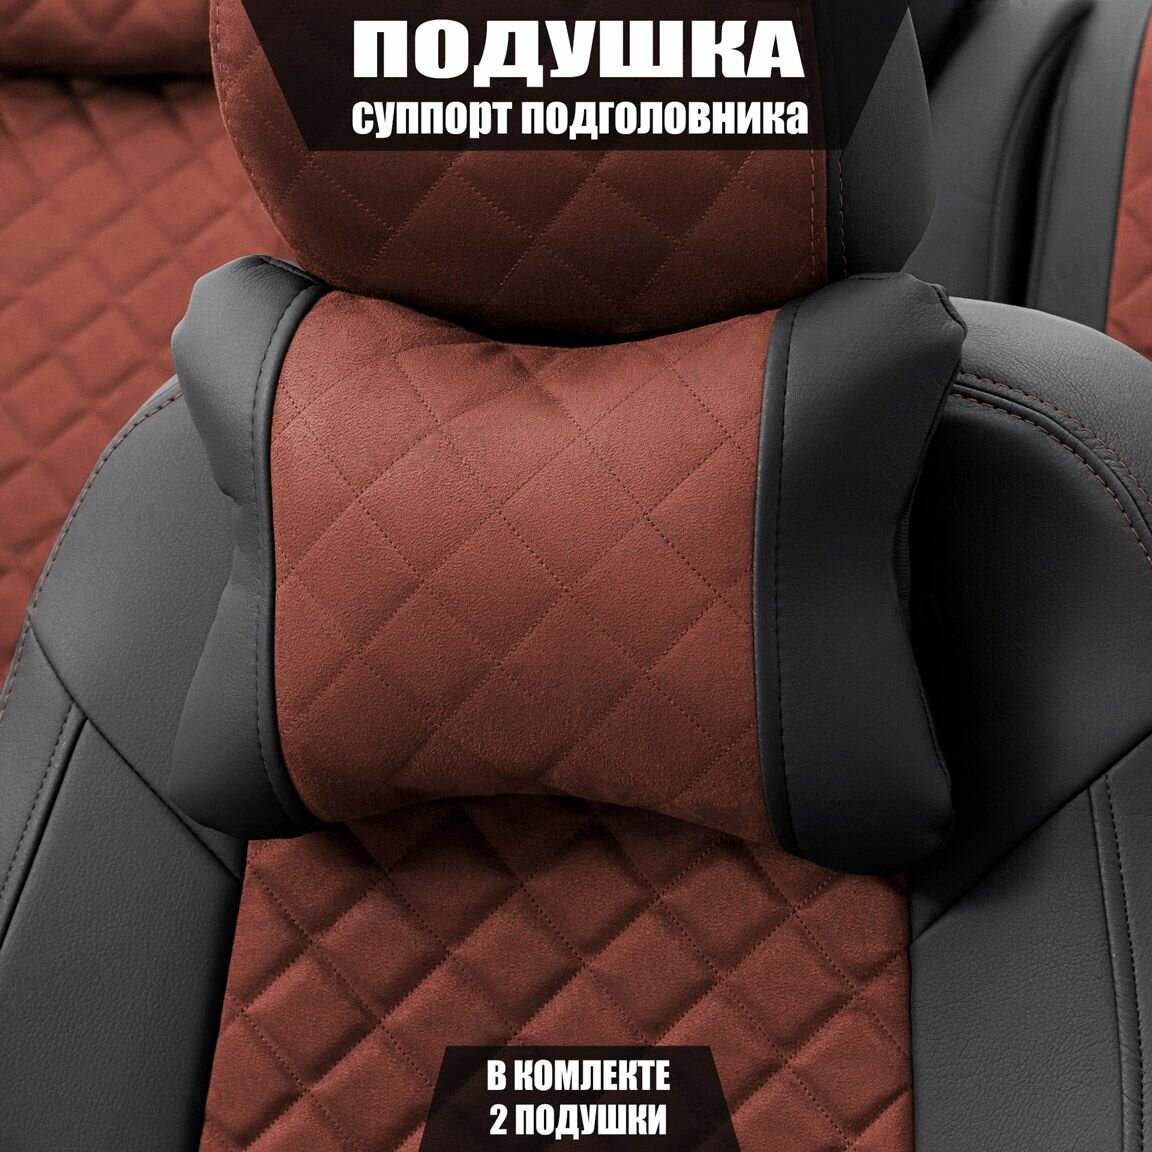 Подушки под шею (суппорт подголовника) для Хендай Элантра (2015 - 2019) хэтчбек 5 дверей / Hyundai Elantra Ромб Алькантара 2 подушки Черный